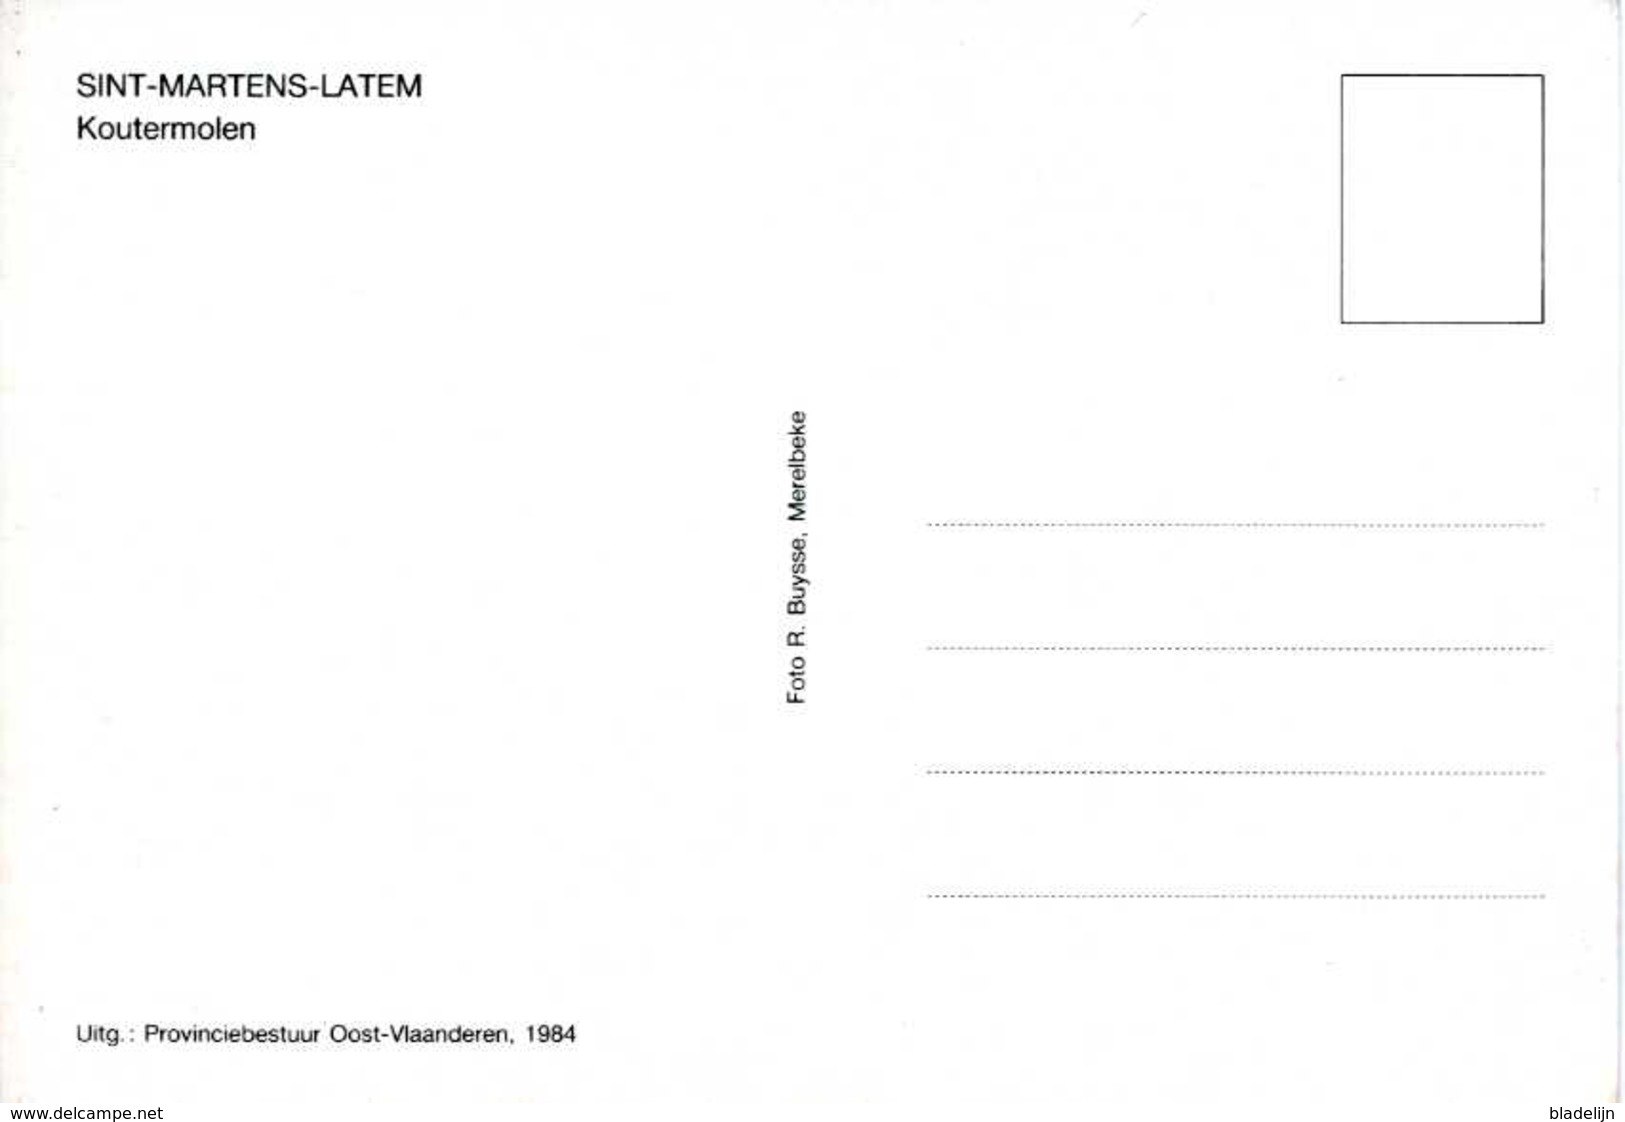 SINT-MARTENS-LATEM (O.Vl.) - Molen/moulin - Houten Standaardmolen (Koutermolen) Na Verplaatsing / Restauratie (1984) - Sint-Martens-Latem